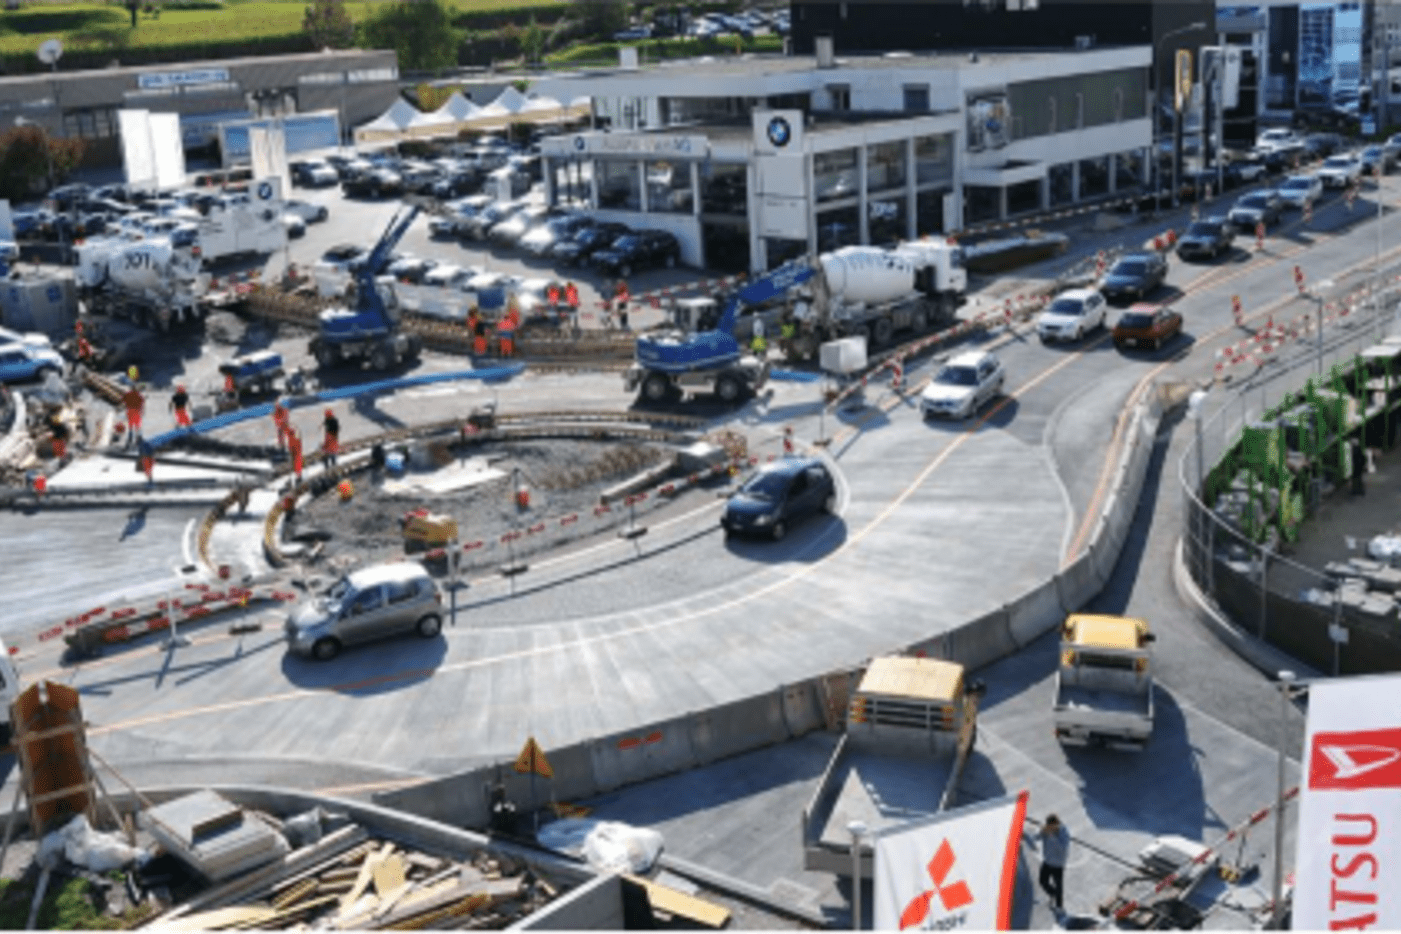 Kreisel Comercial-/Richtstrasse, Chur: Baustelle unter Verkehr